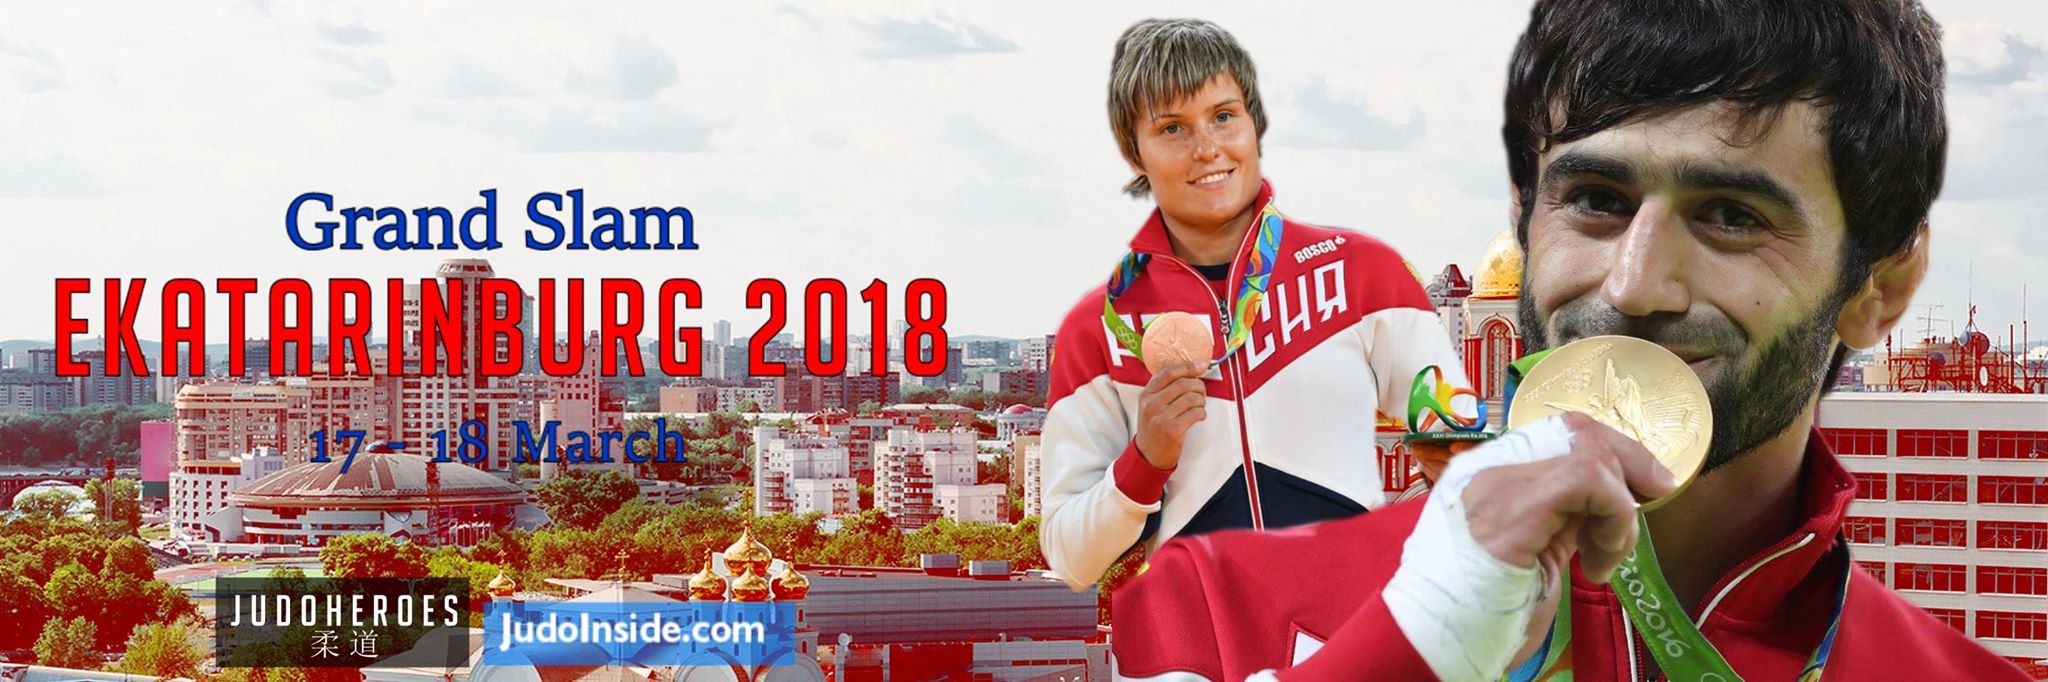 20181603_ekaterinburg_gs_jh_banner